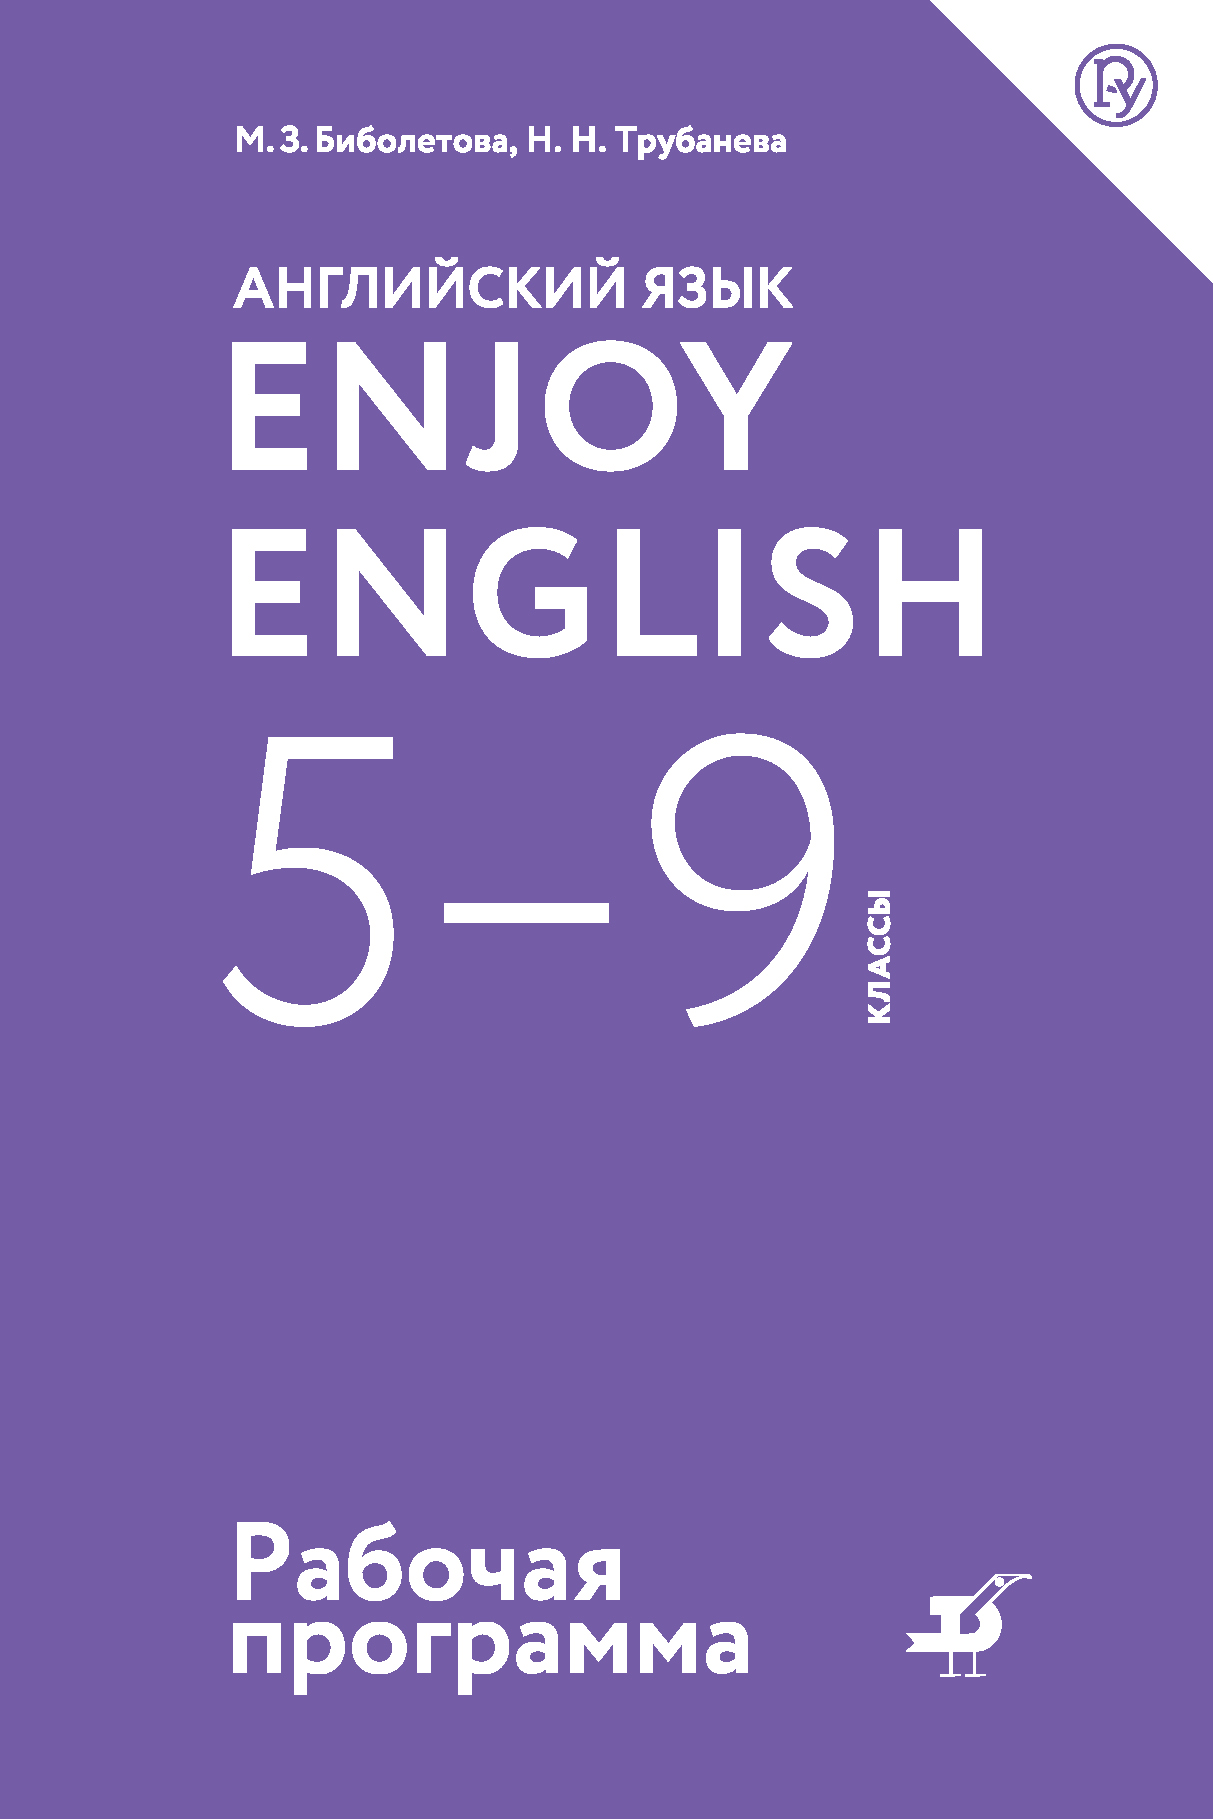 Английский язык. Enjoy English. 5-9 классы. Рабочая программа